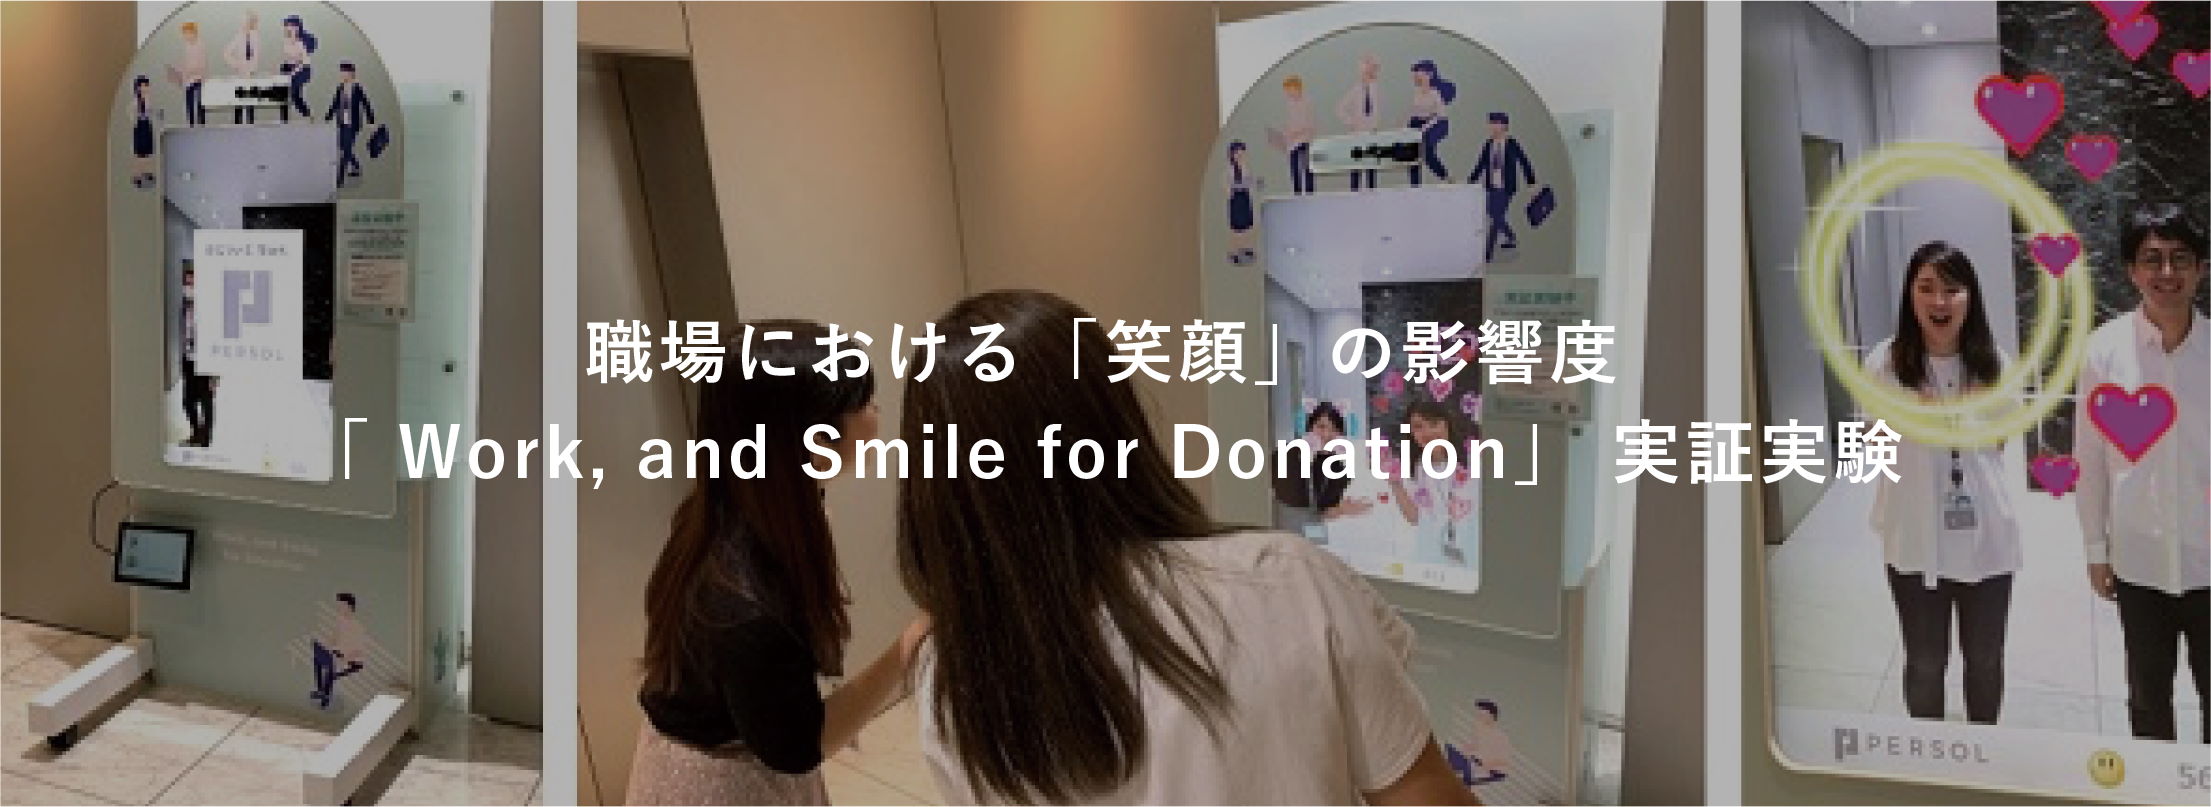 職場における「笑顔」の影響度「Work, and Smile for Donation」実証実験